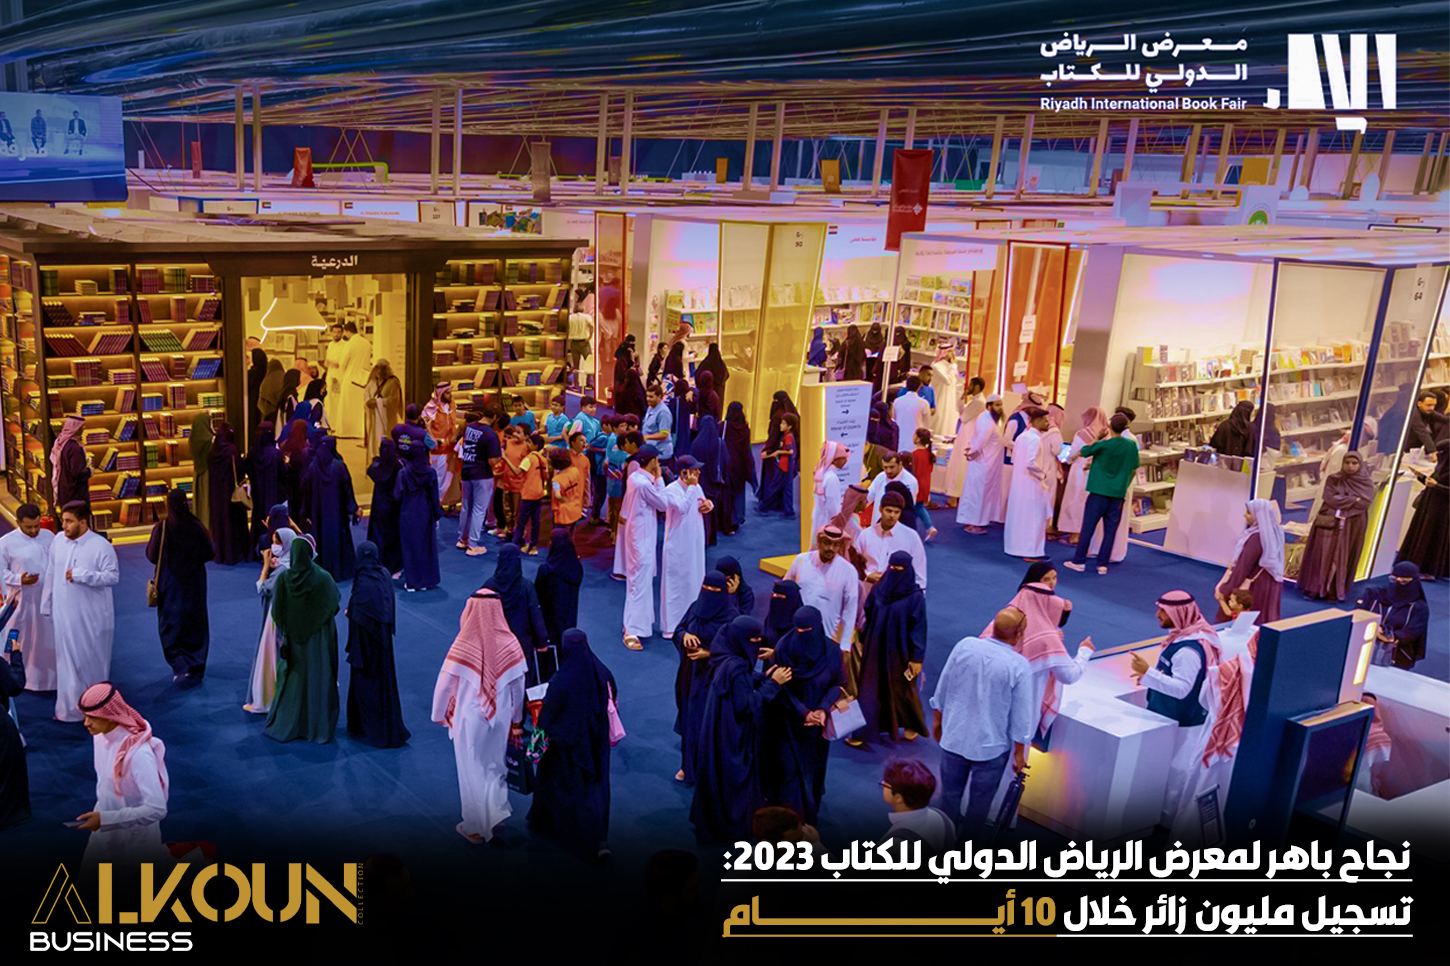 نجاح باهر لمعرض الرياض الدولي للكتاب 2023: تسجيل مليون زائر خلال 10 أيام